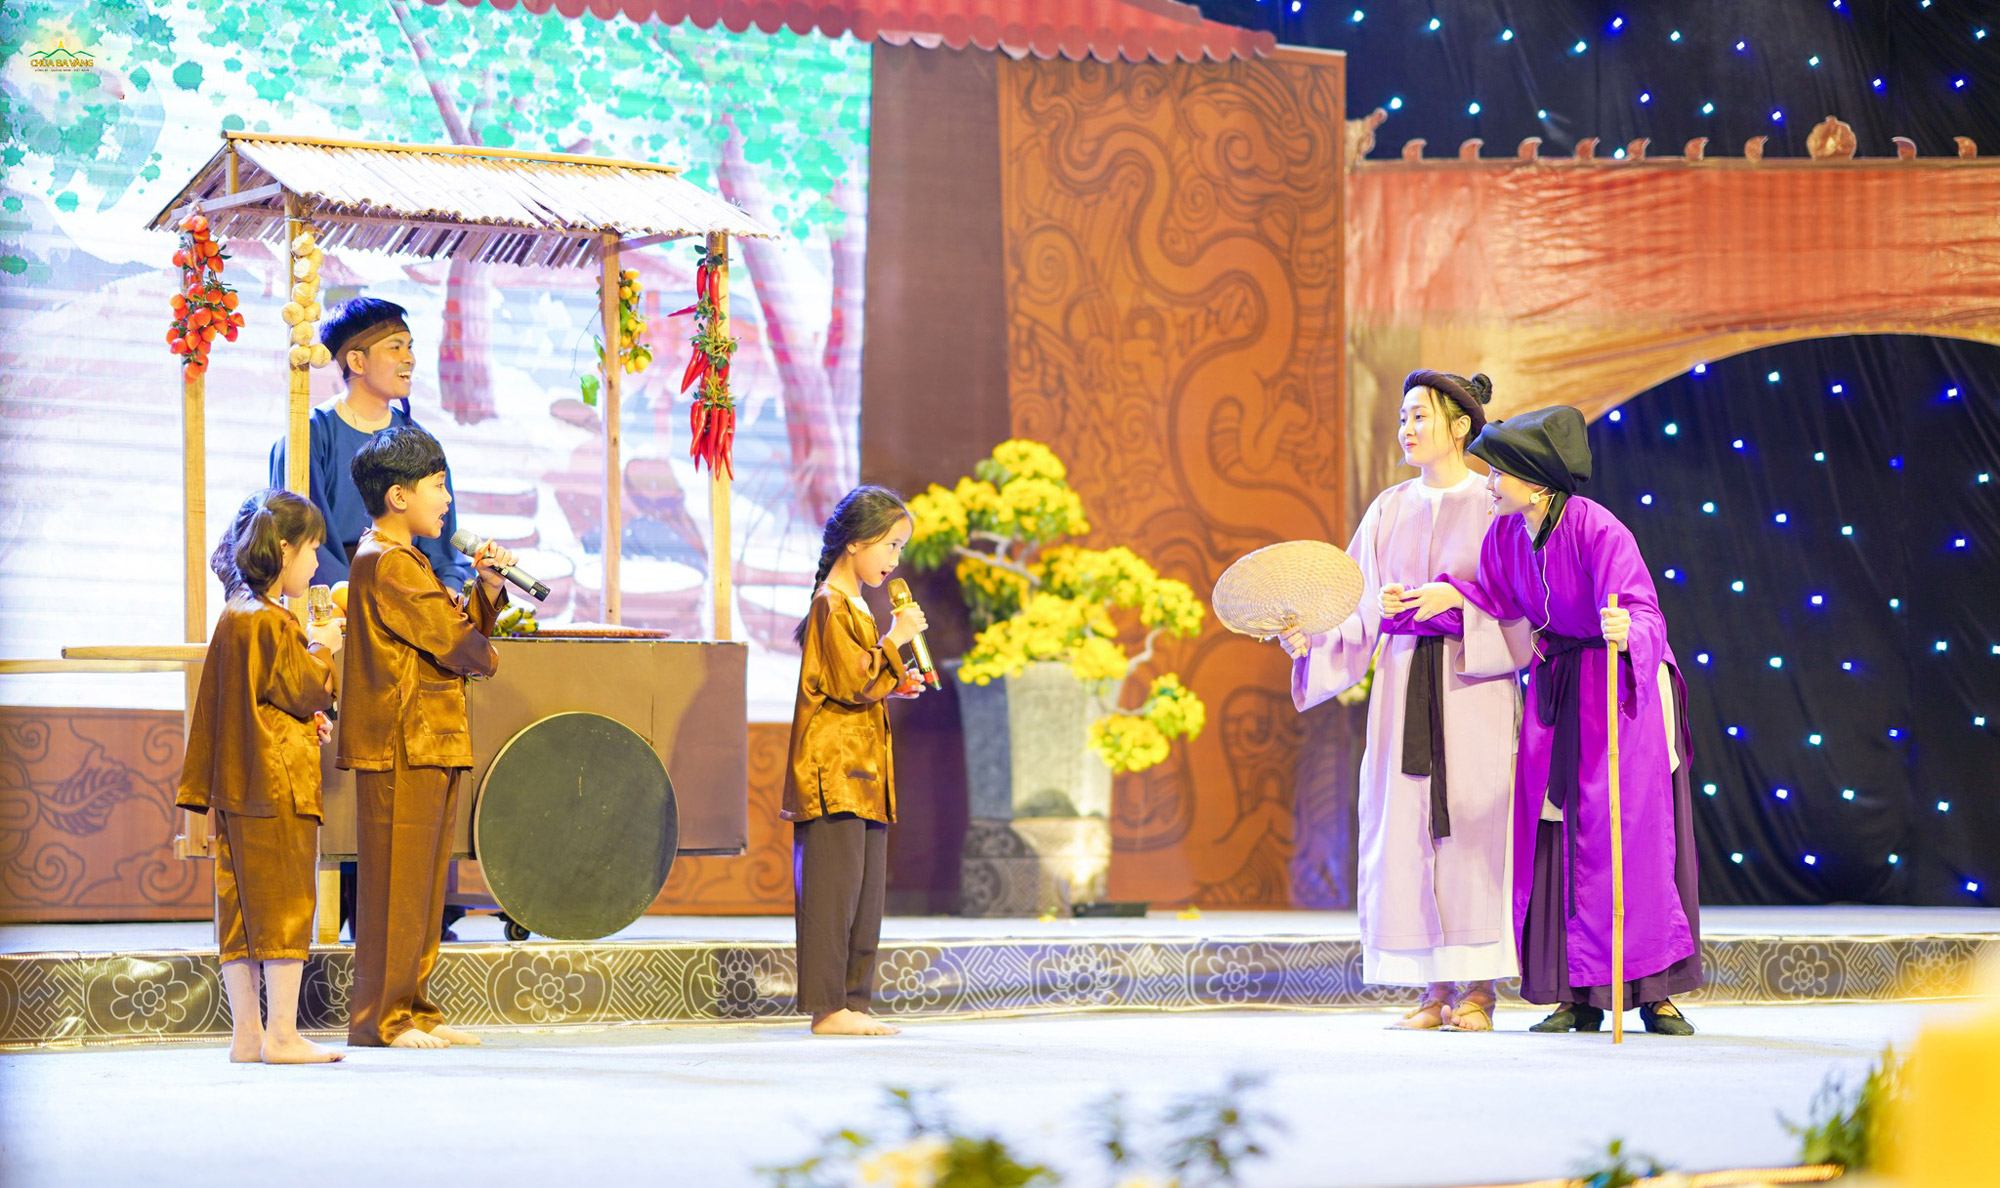   Các Phật tử trong trang phục thời Trần đã tái hiện lại khung cảnh người dân Đại Việt hân hoan, hạnh phúc khi sống trong đất nước thái bình  